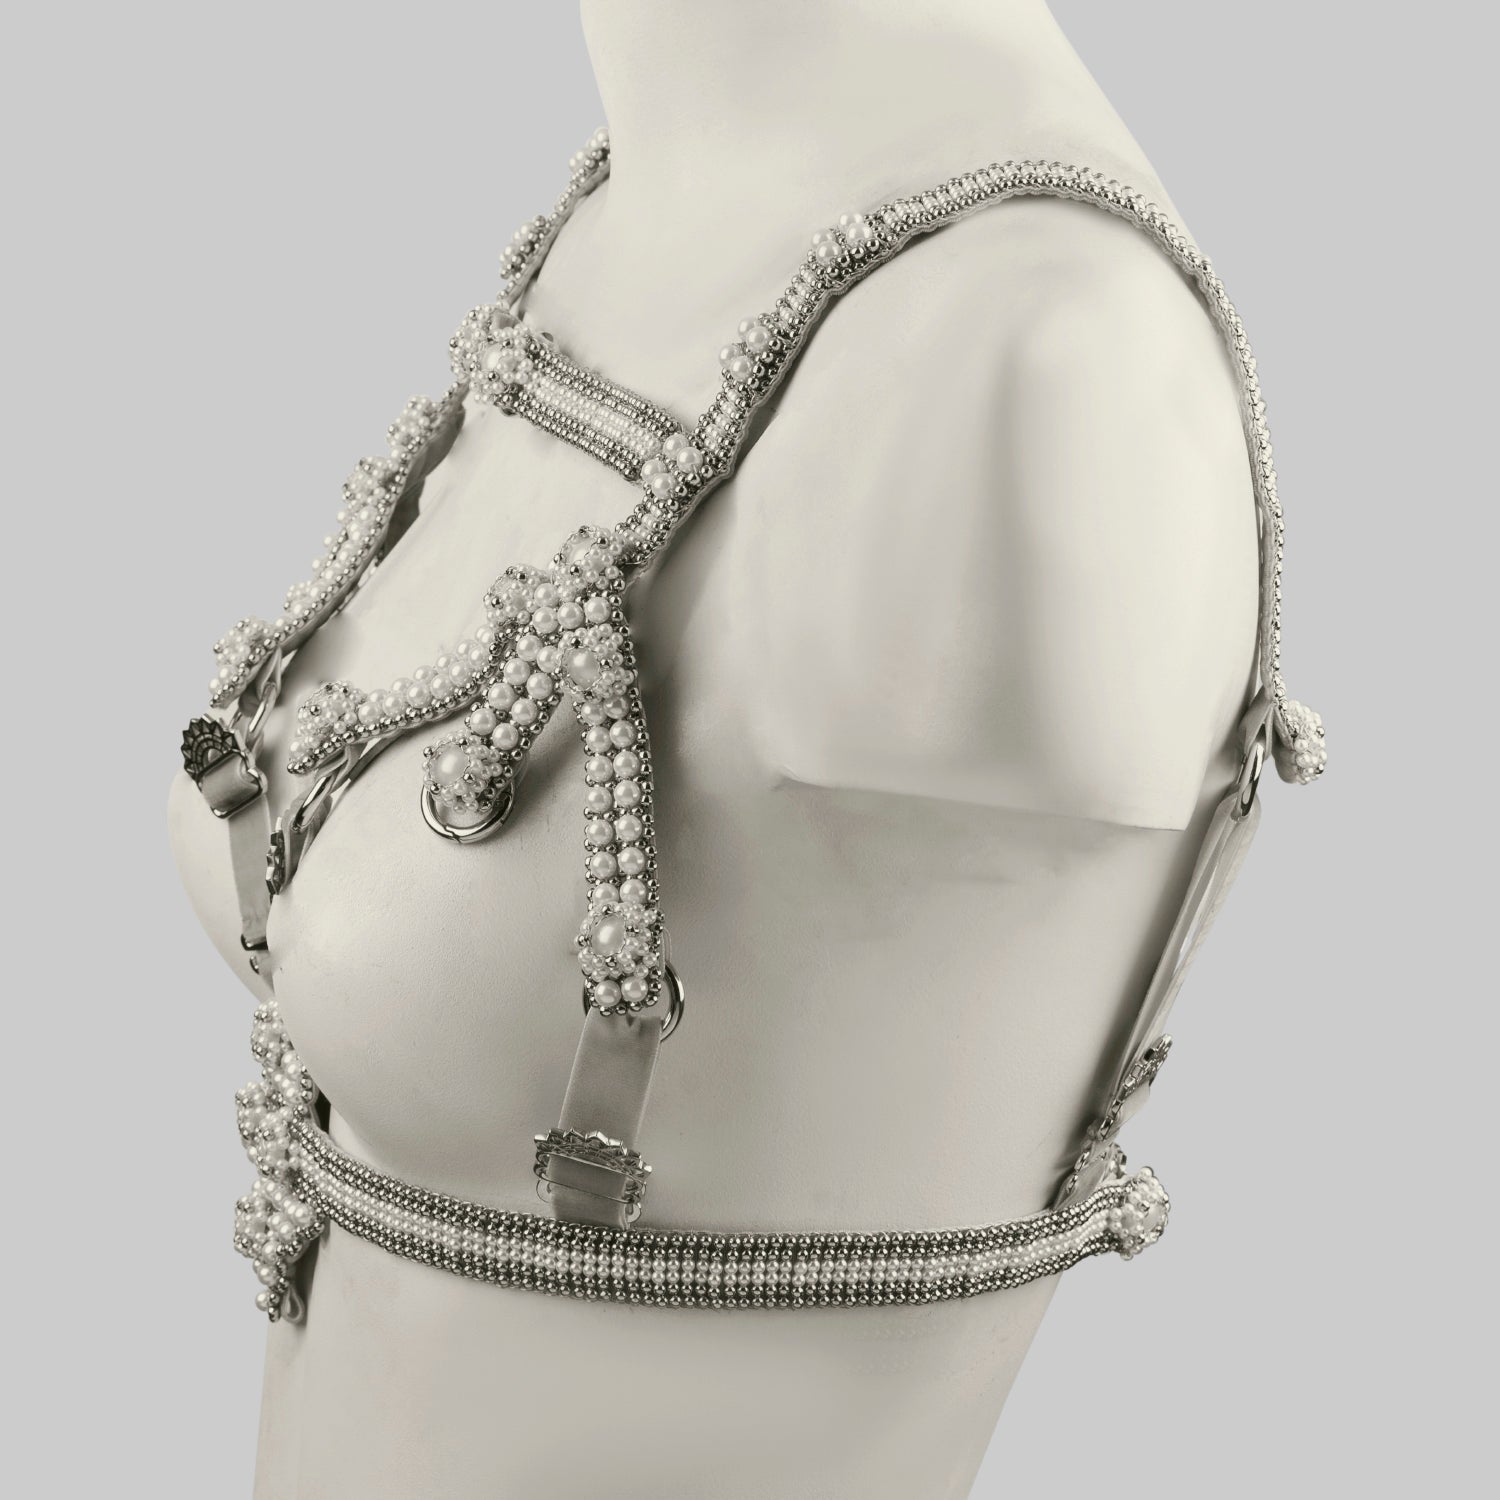 Elohim Modular Harness in Pearl